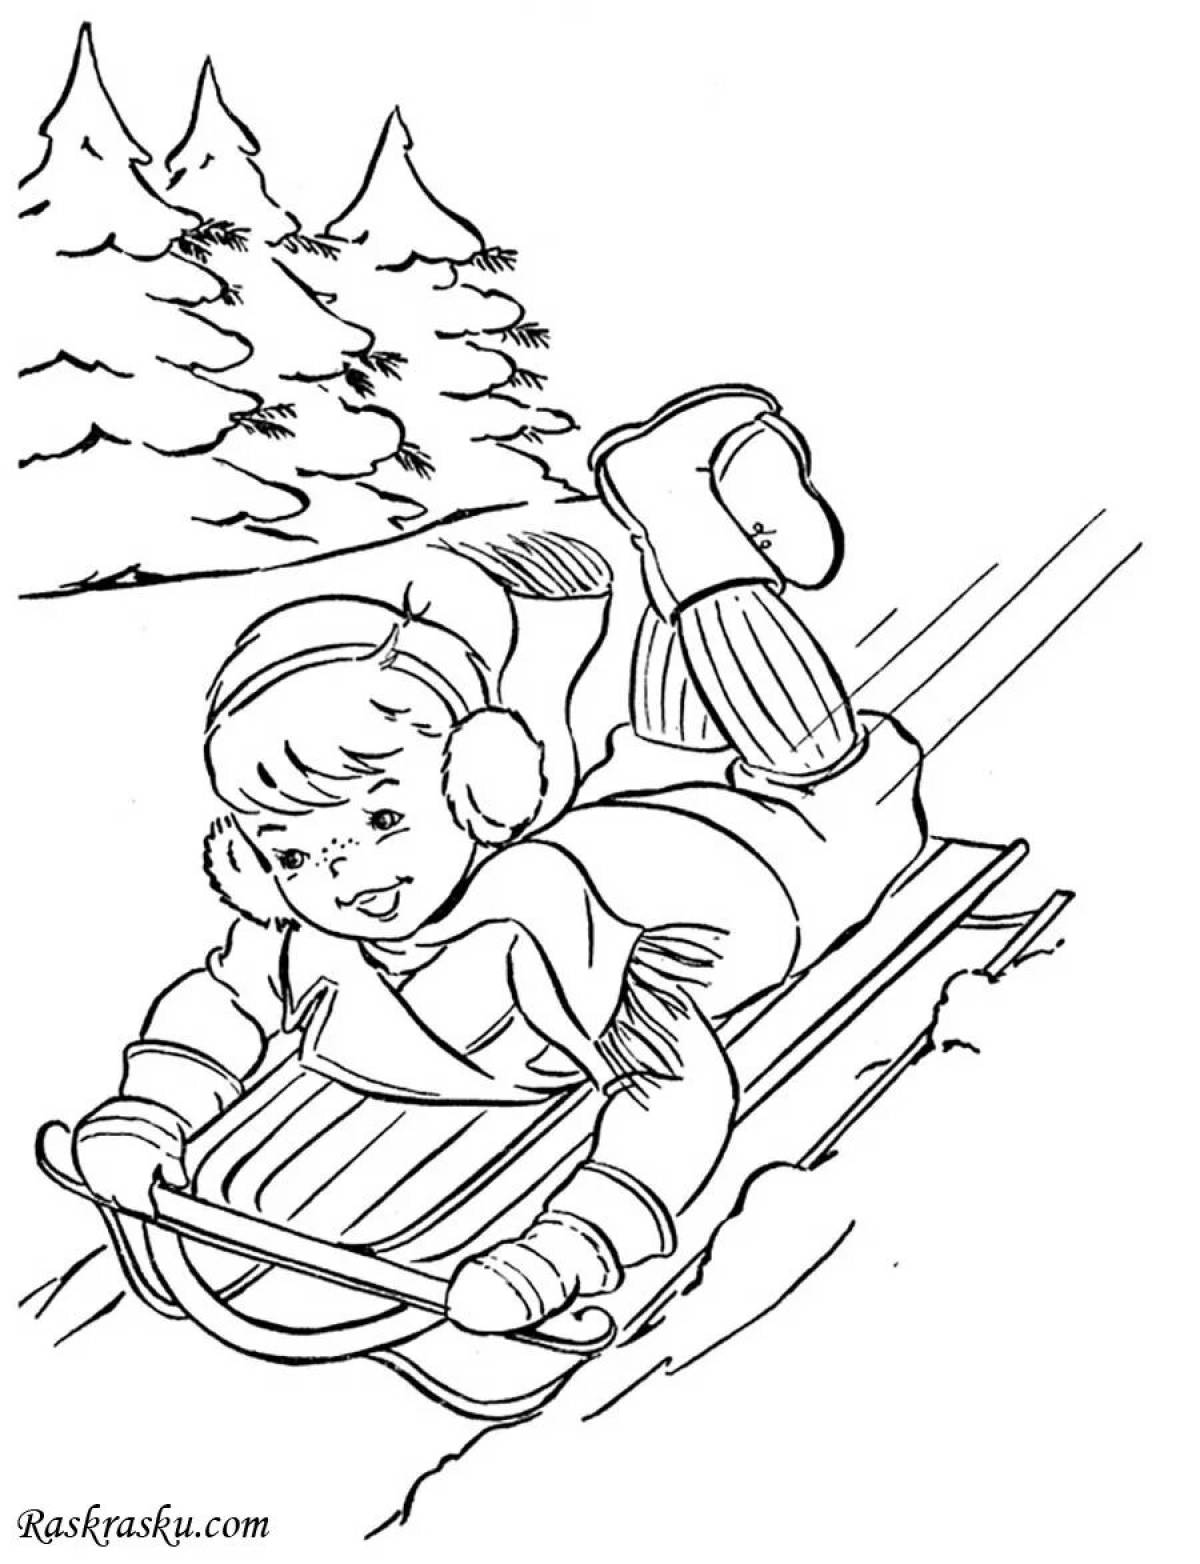 Children sledding down slide #6